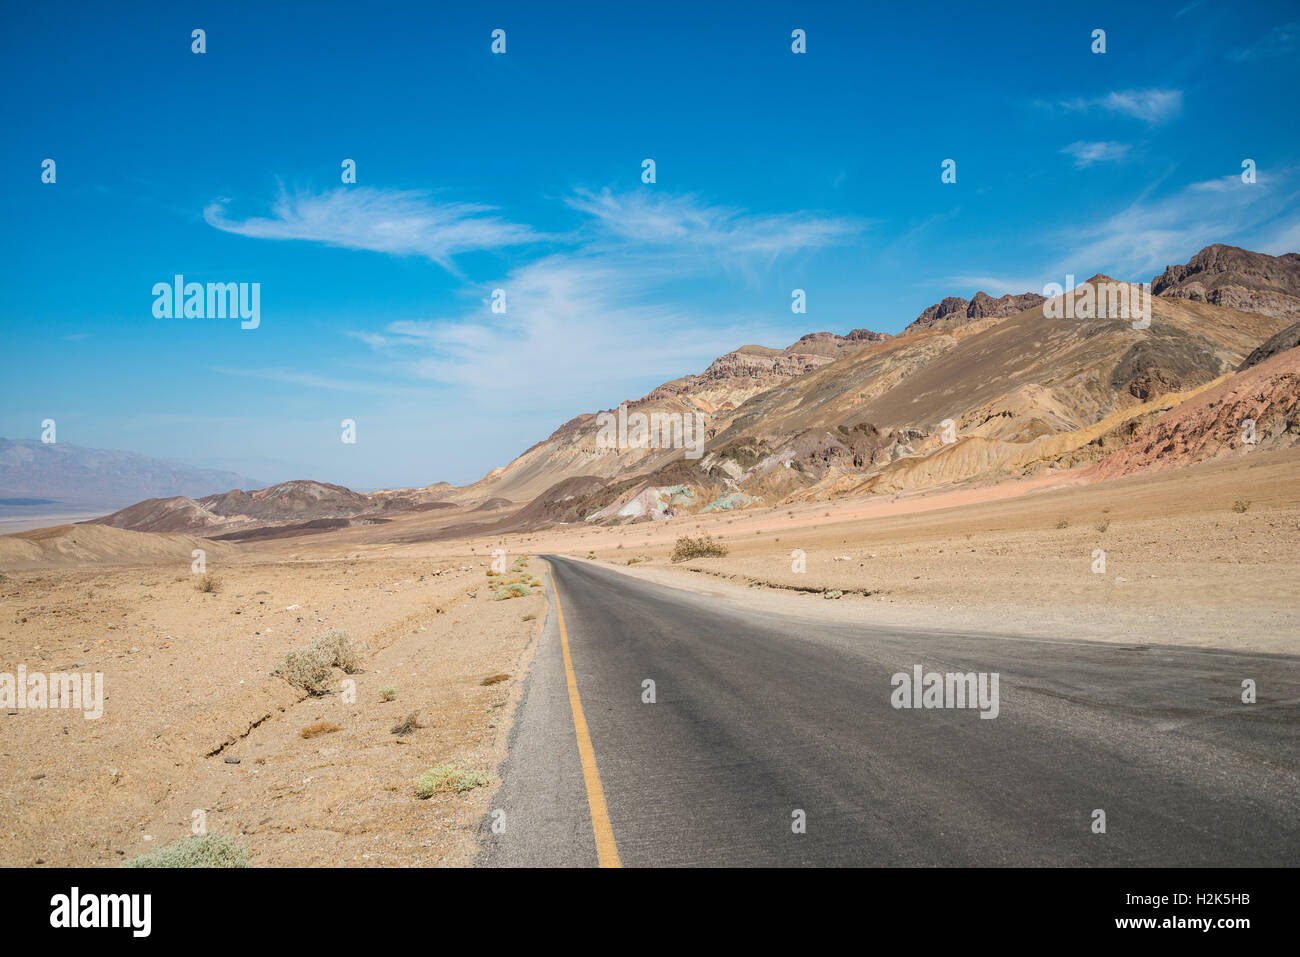 Route à travers des paysages désertiques, des artistes de route, désert de Mojave, Death Valley National Park, California, USA Banque D'Images